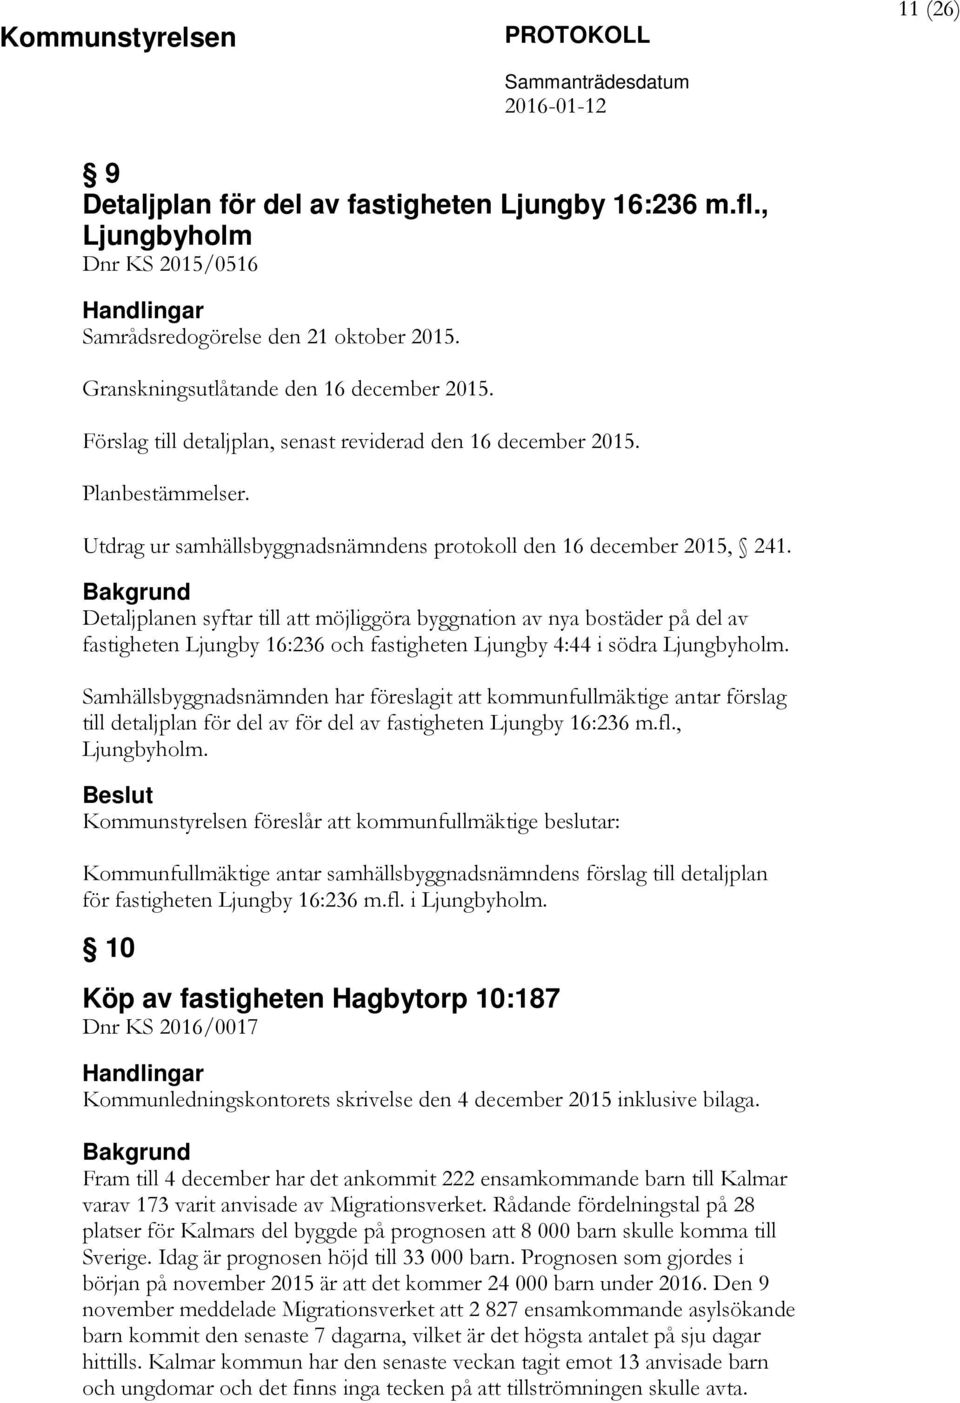 Detaljplanen syftar till att möjliggöra byggnation av nya bostäder på del av fastigheten Ljungby 16:236 och fastigheten Ljungby 4:44 i södra Ljungbyholm.